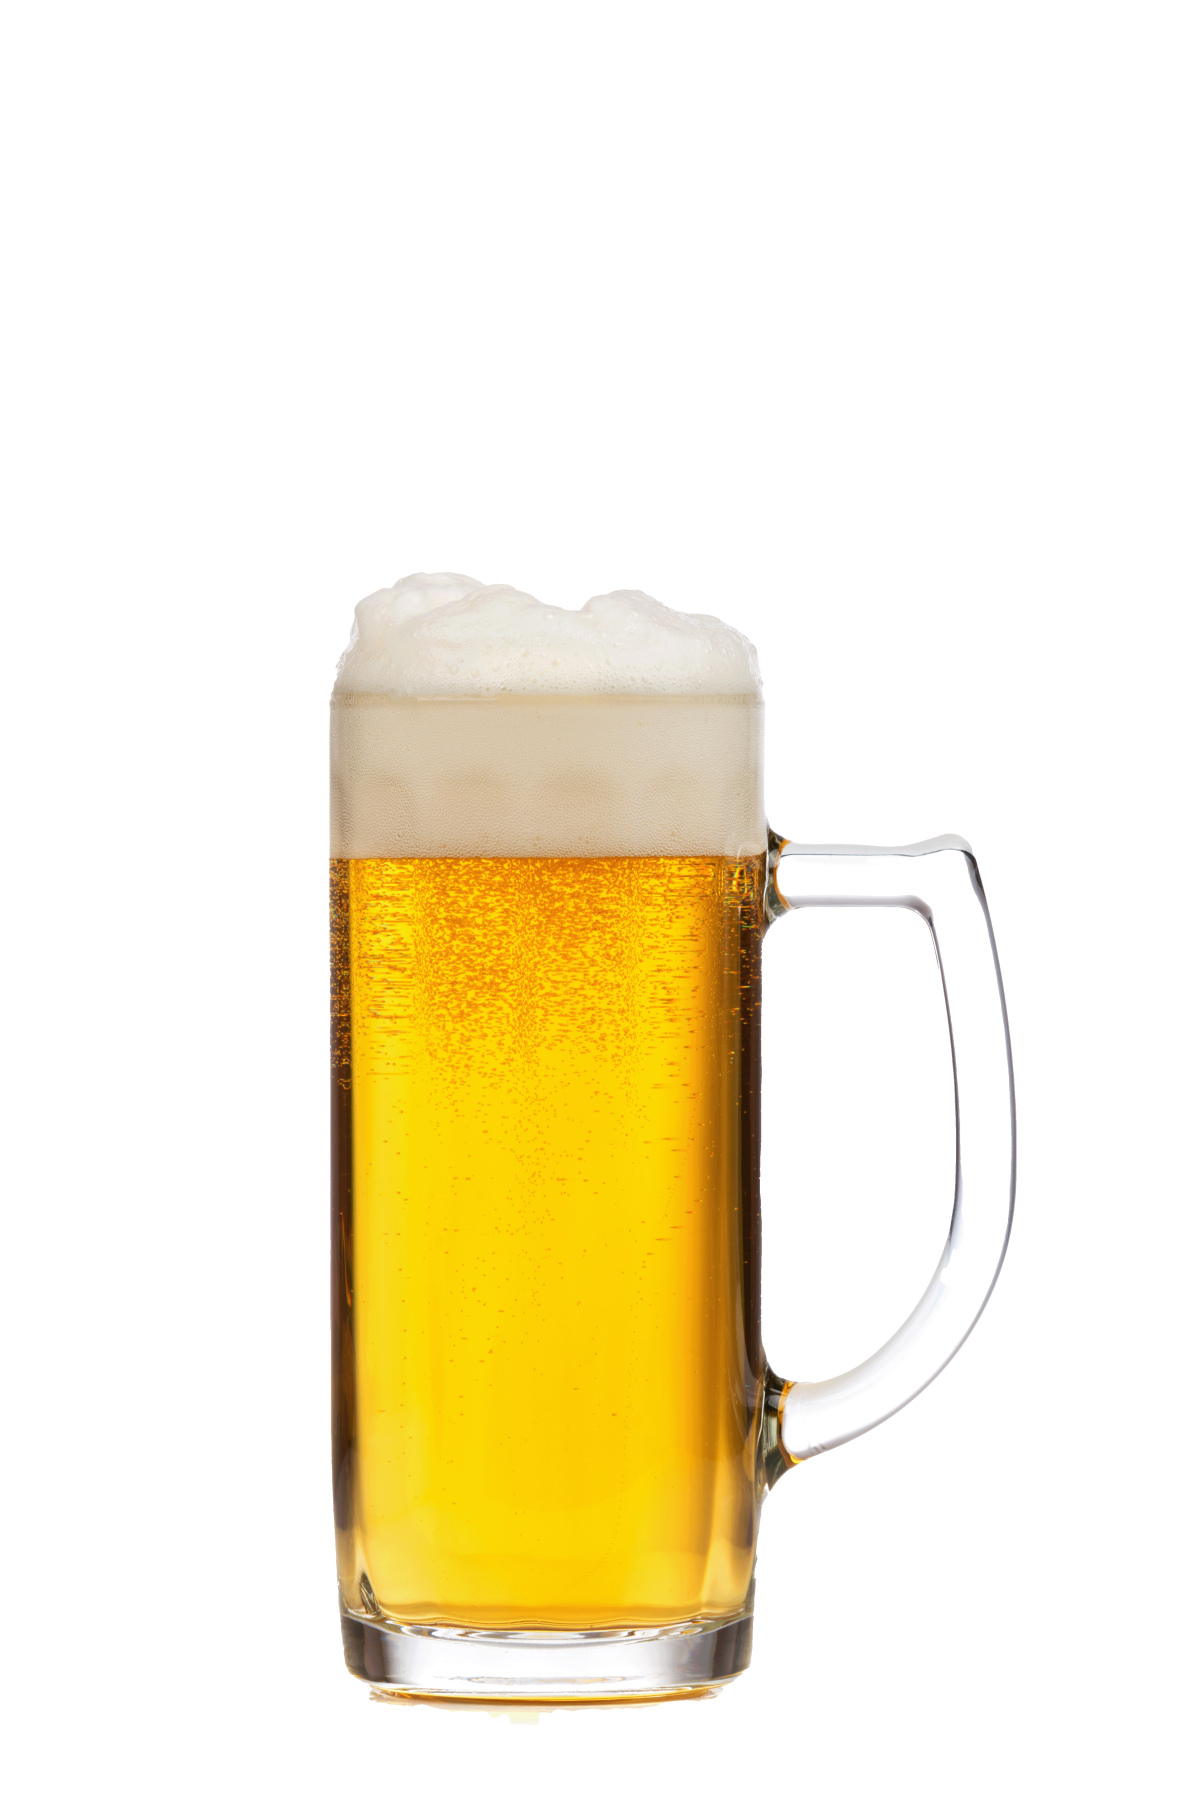 Kategoriebild von Bier